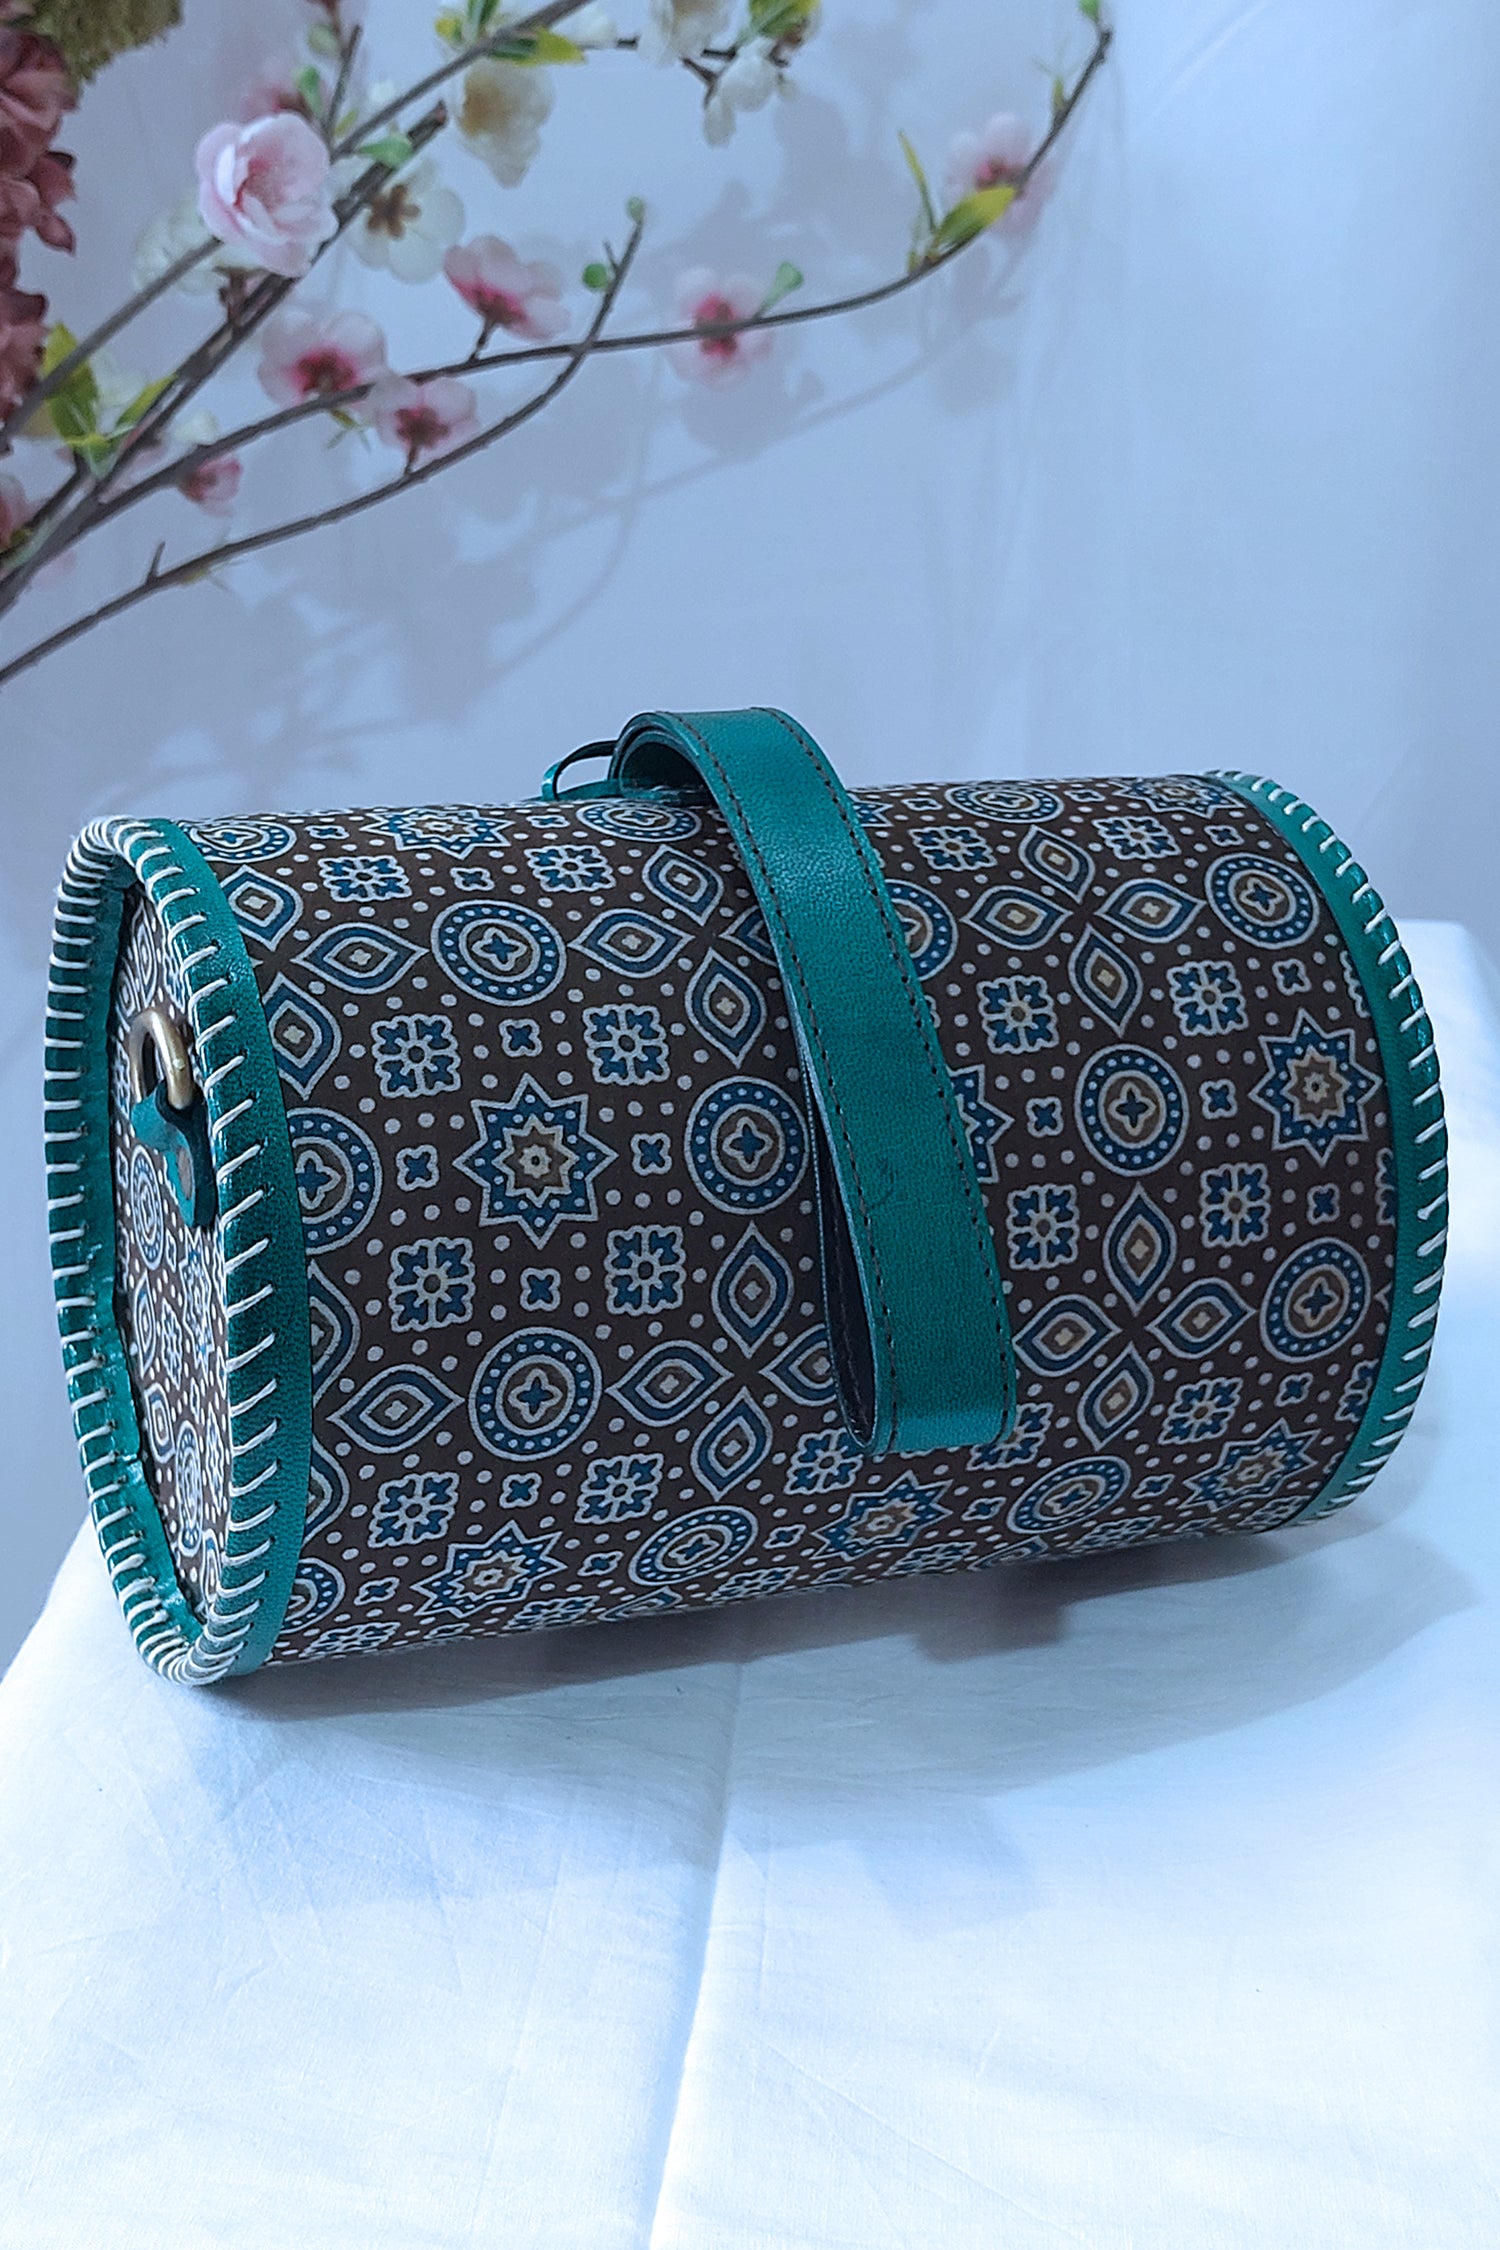 Zylinder Handcrafted Genuine Leather Ajrakh Sling Bag Sling Bag 